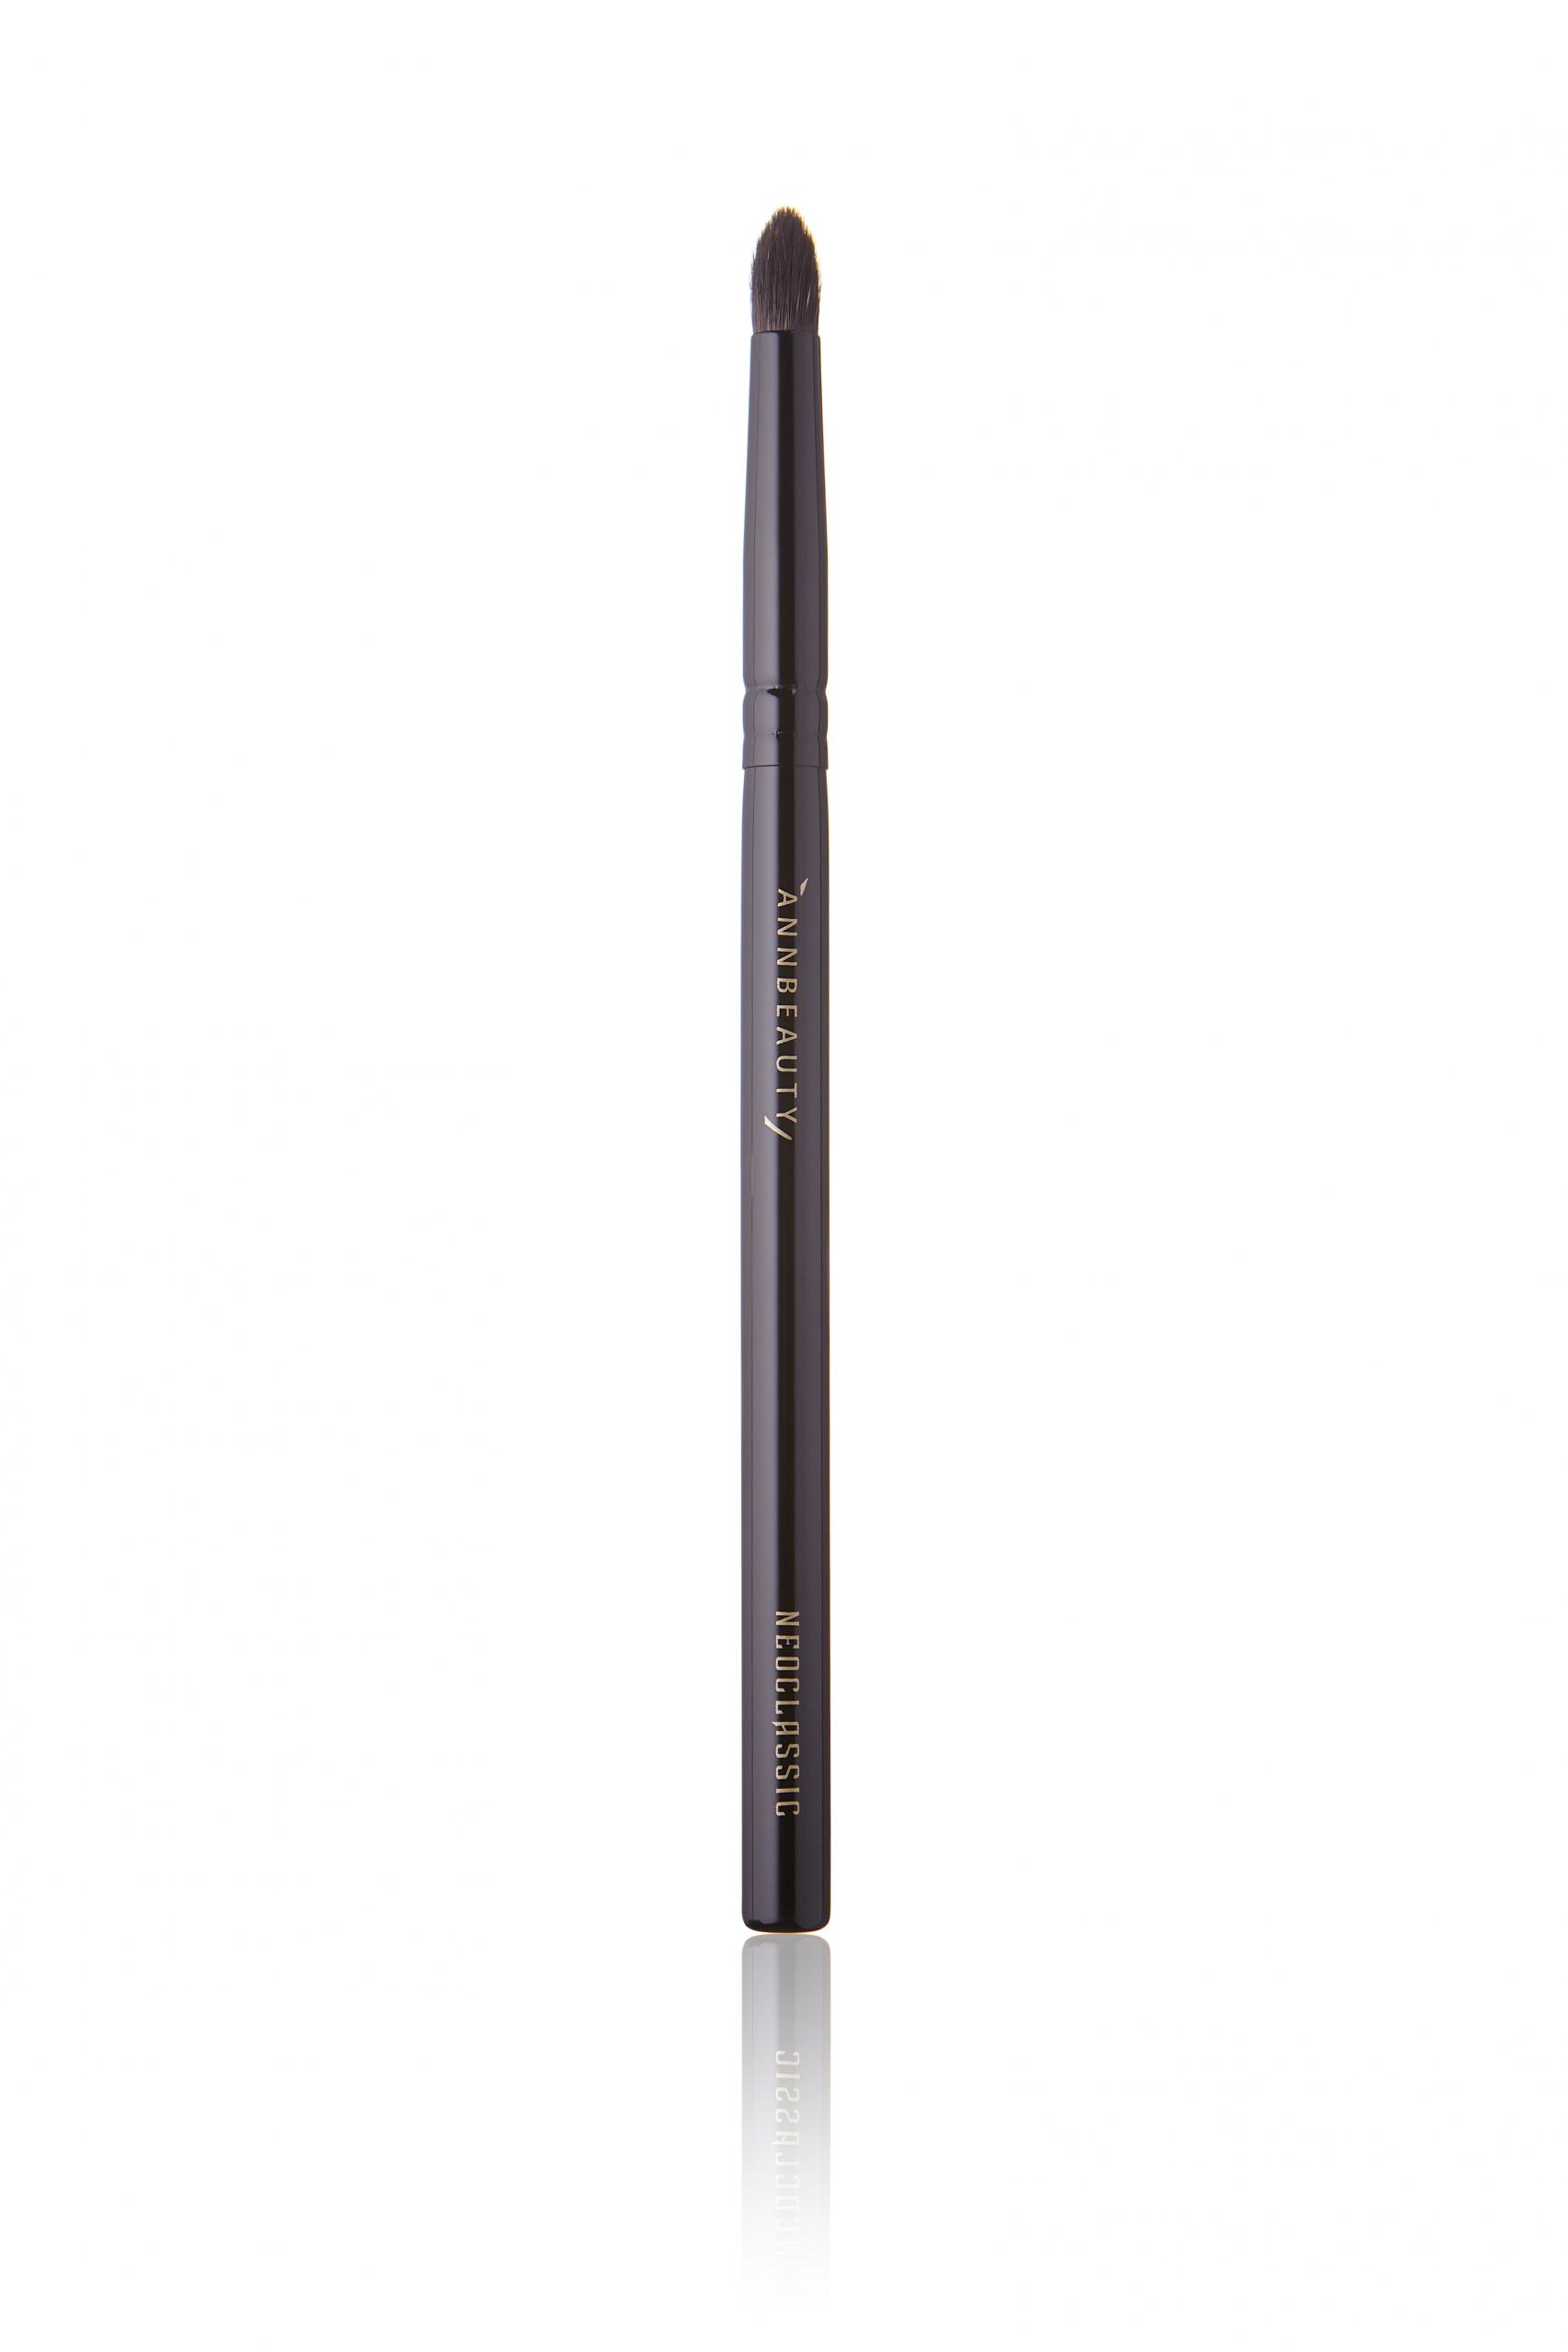 Annbeauty N7 - миниатюрная кисть удобна для нанесения теней и карандаша на определённую зону, а также для проработки нижнего века